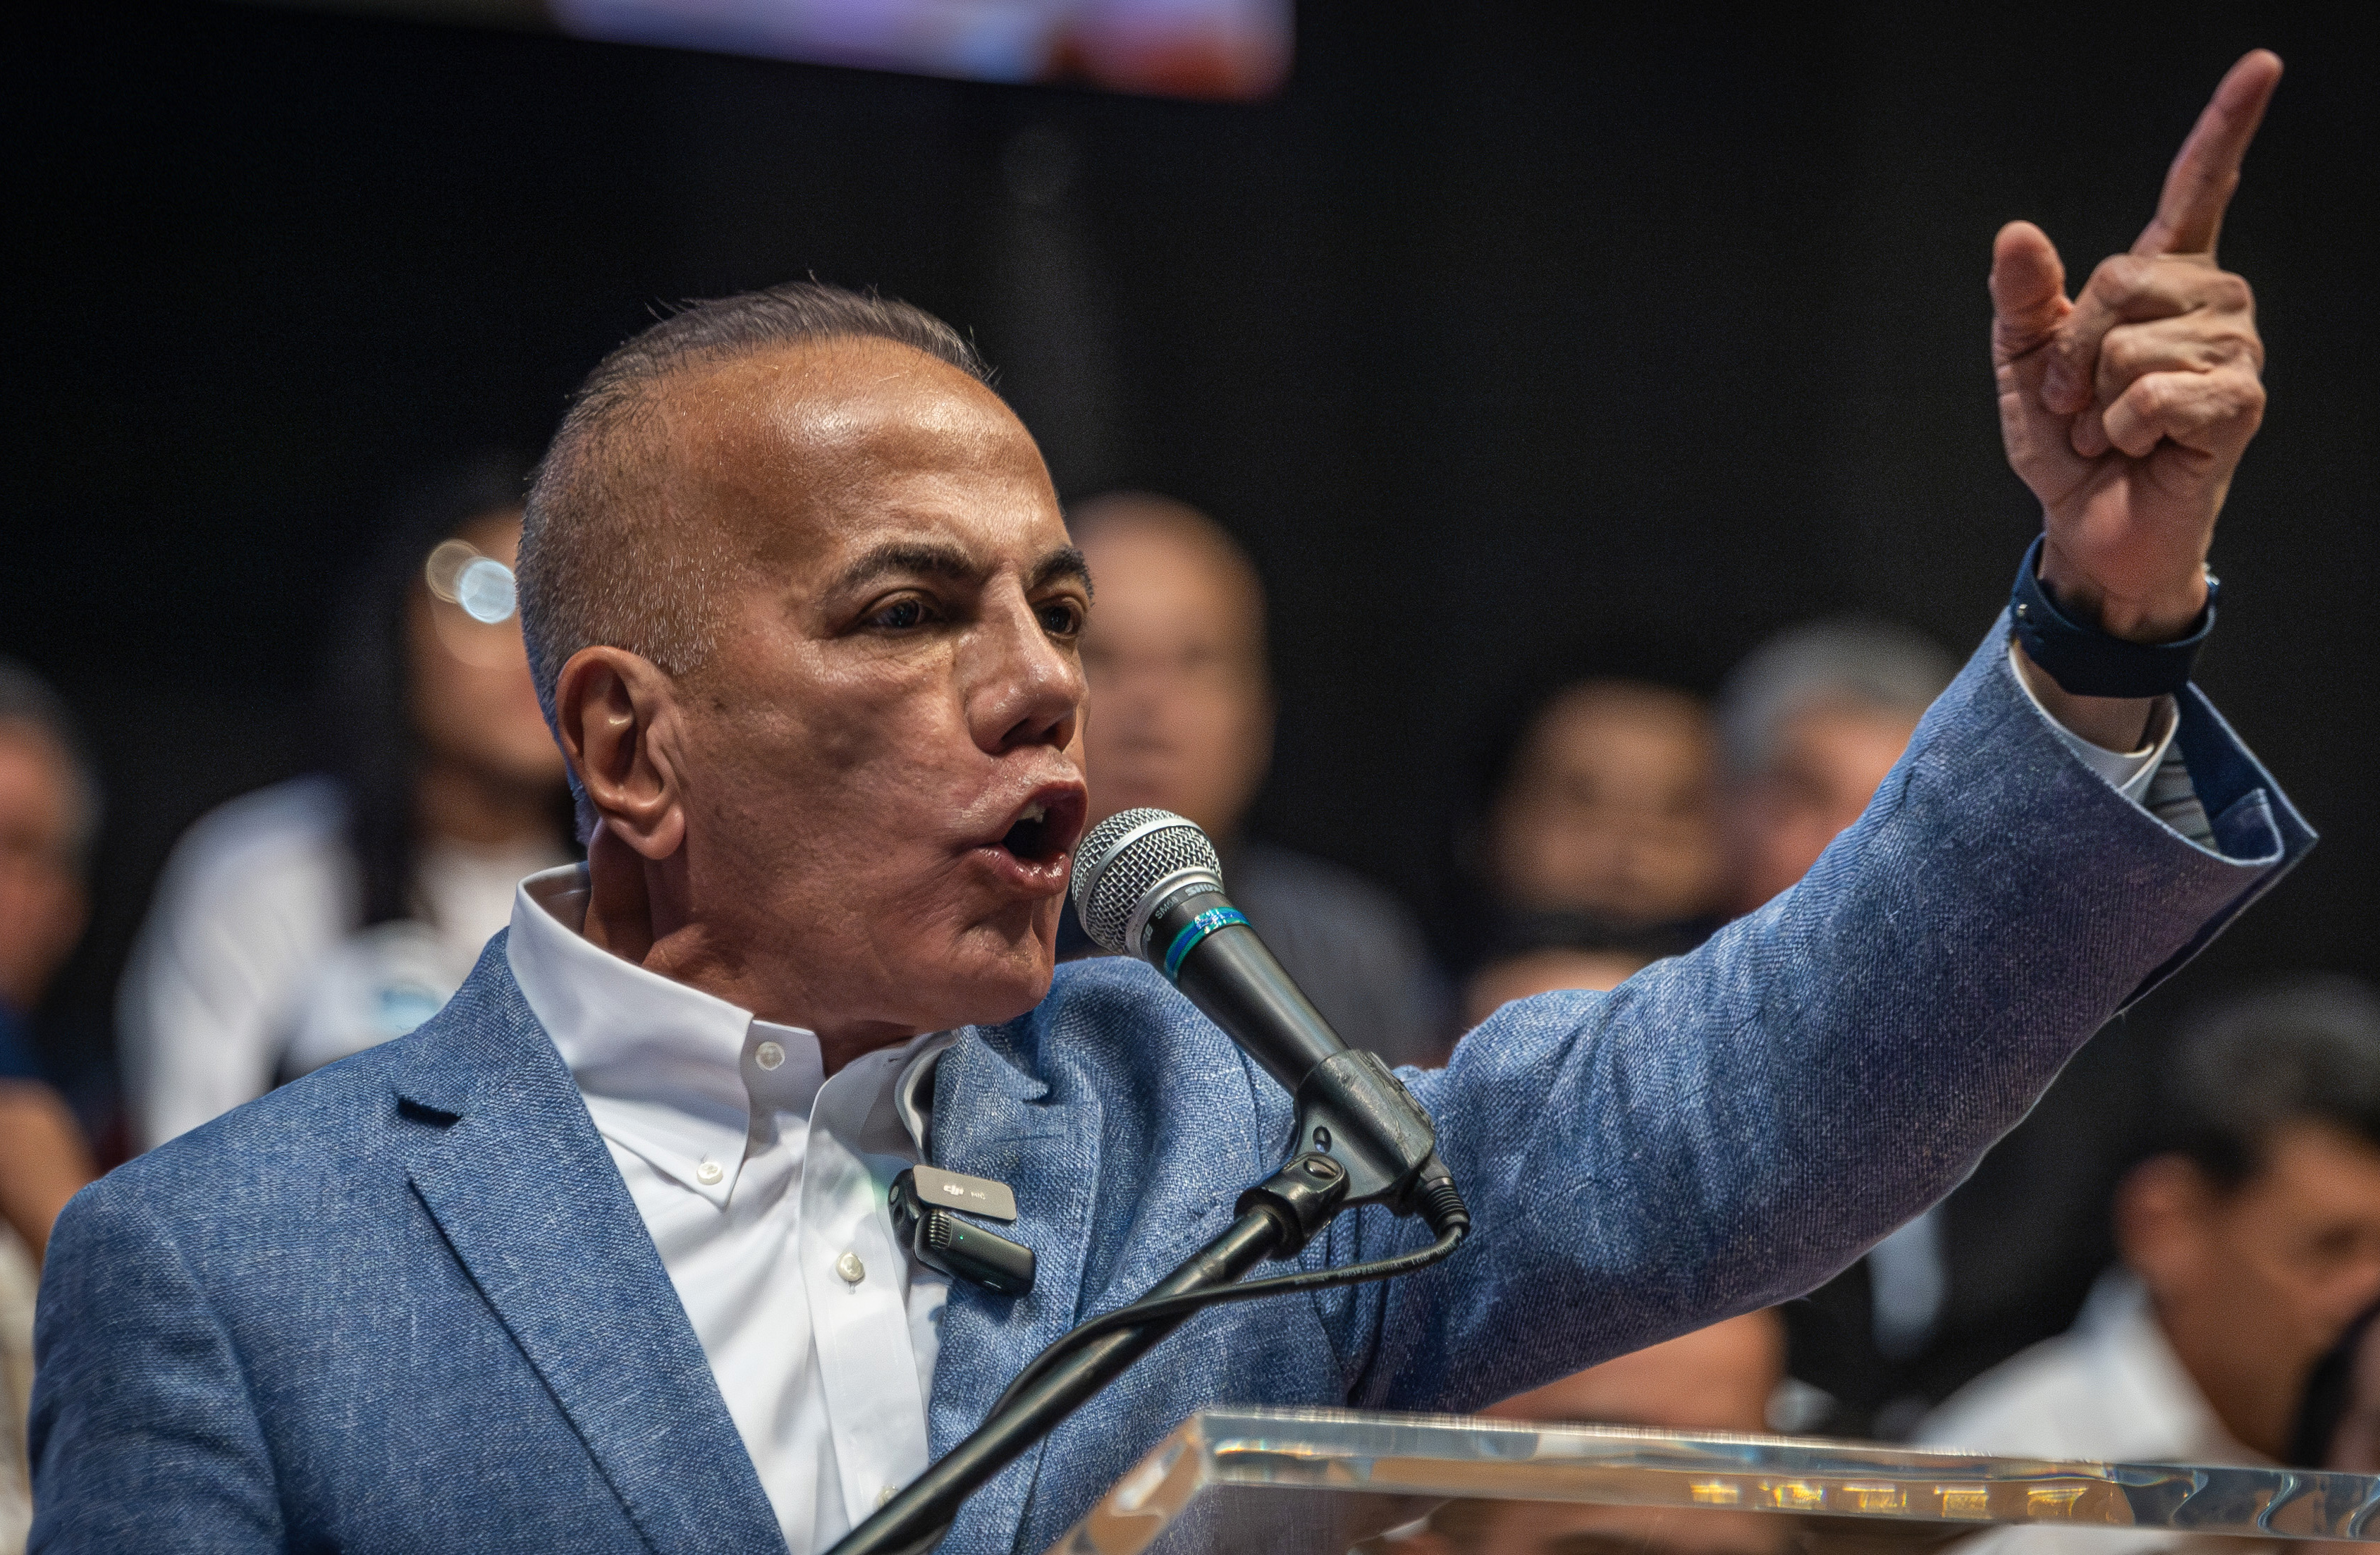 Elecciones en Venezuela: Manuel Rosales dijo que está dispuesto a entregar su lugar a otro candidato opositor